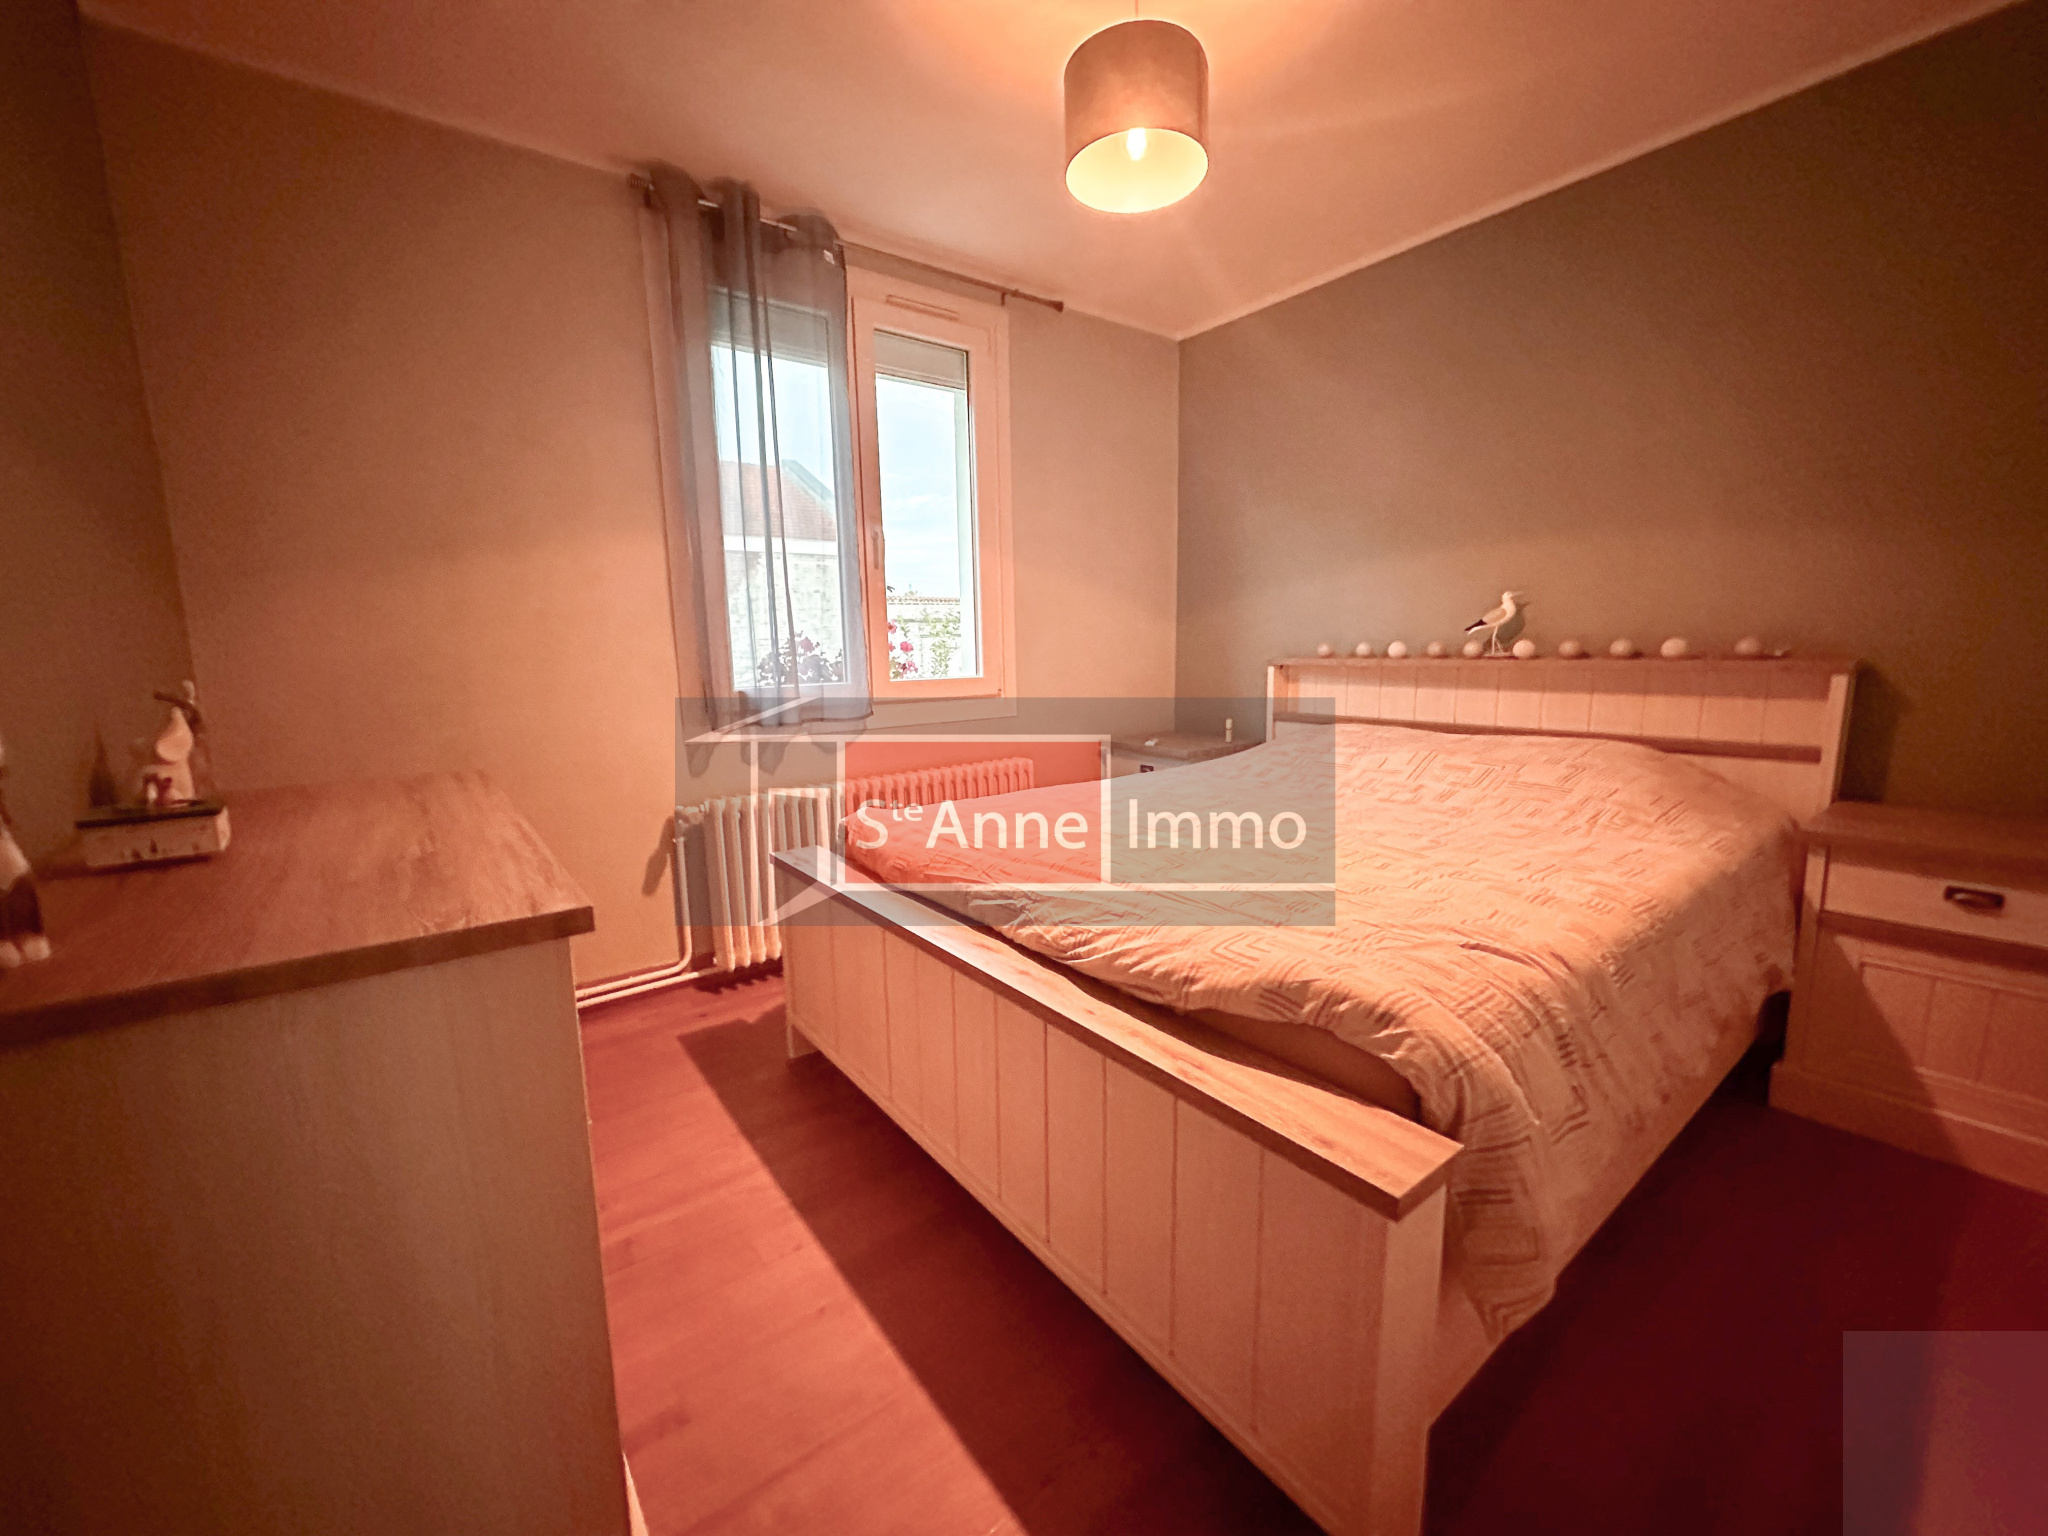 Immo80 – L'immobilier à Amiens et dans la Somme-Maison – 92 m2 – 2 chambres – bureau – véranda – sous-sol – garage – jardin